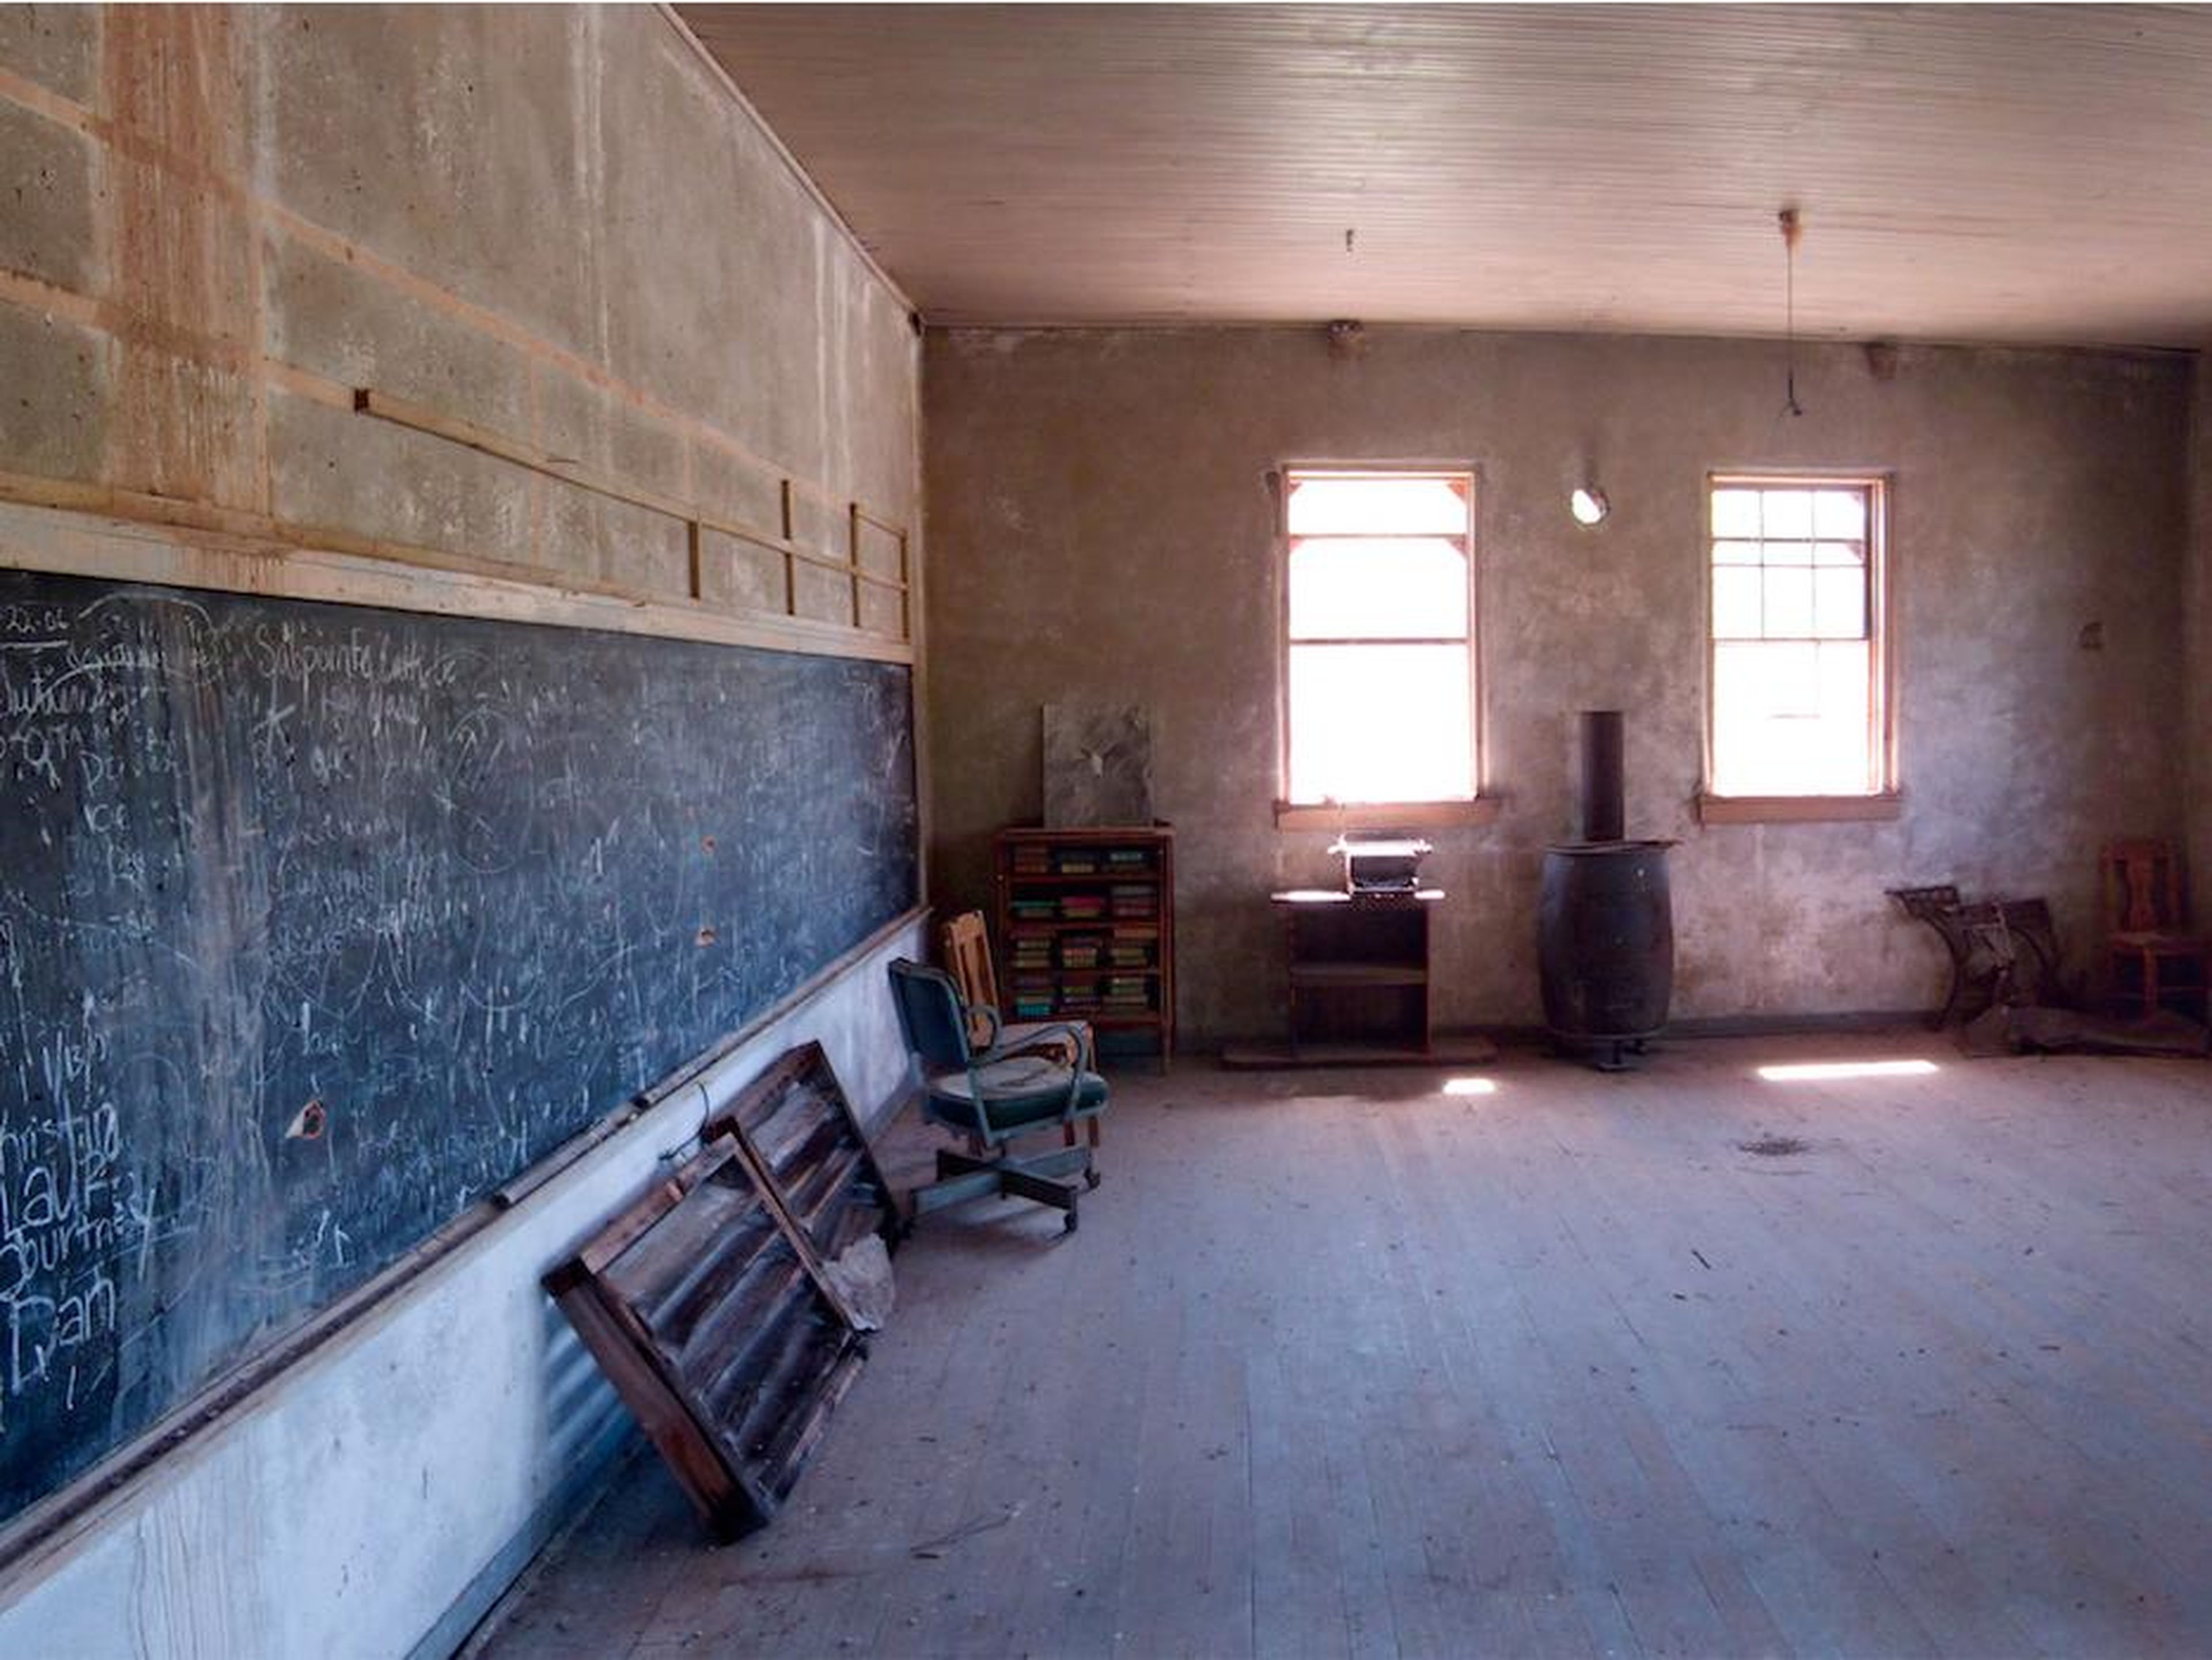 Una escuela permanece desierta después de ser abandonada en 1940.